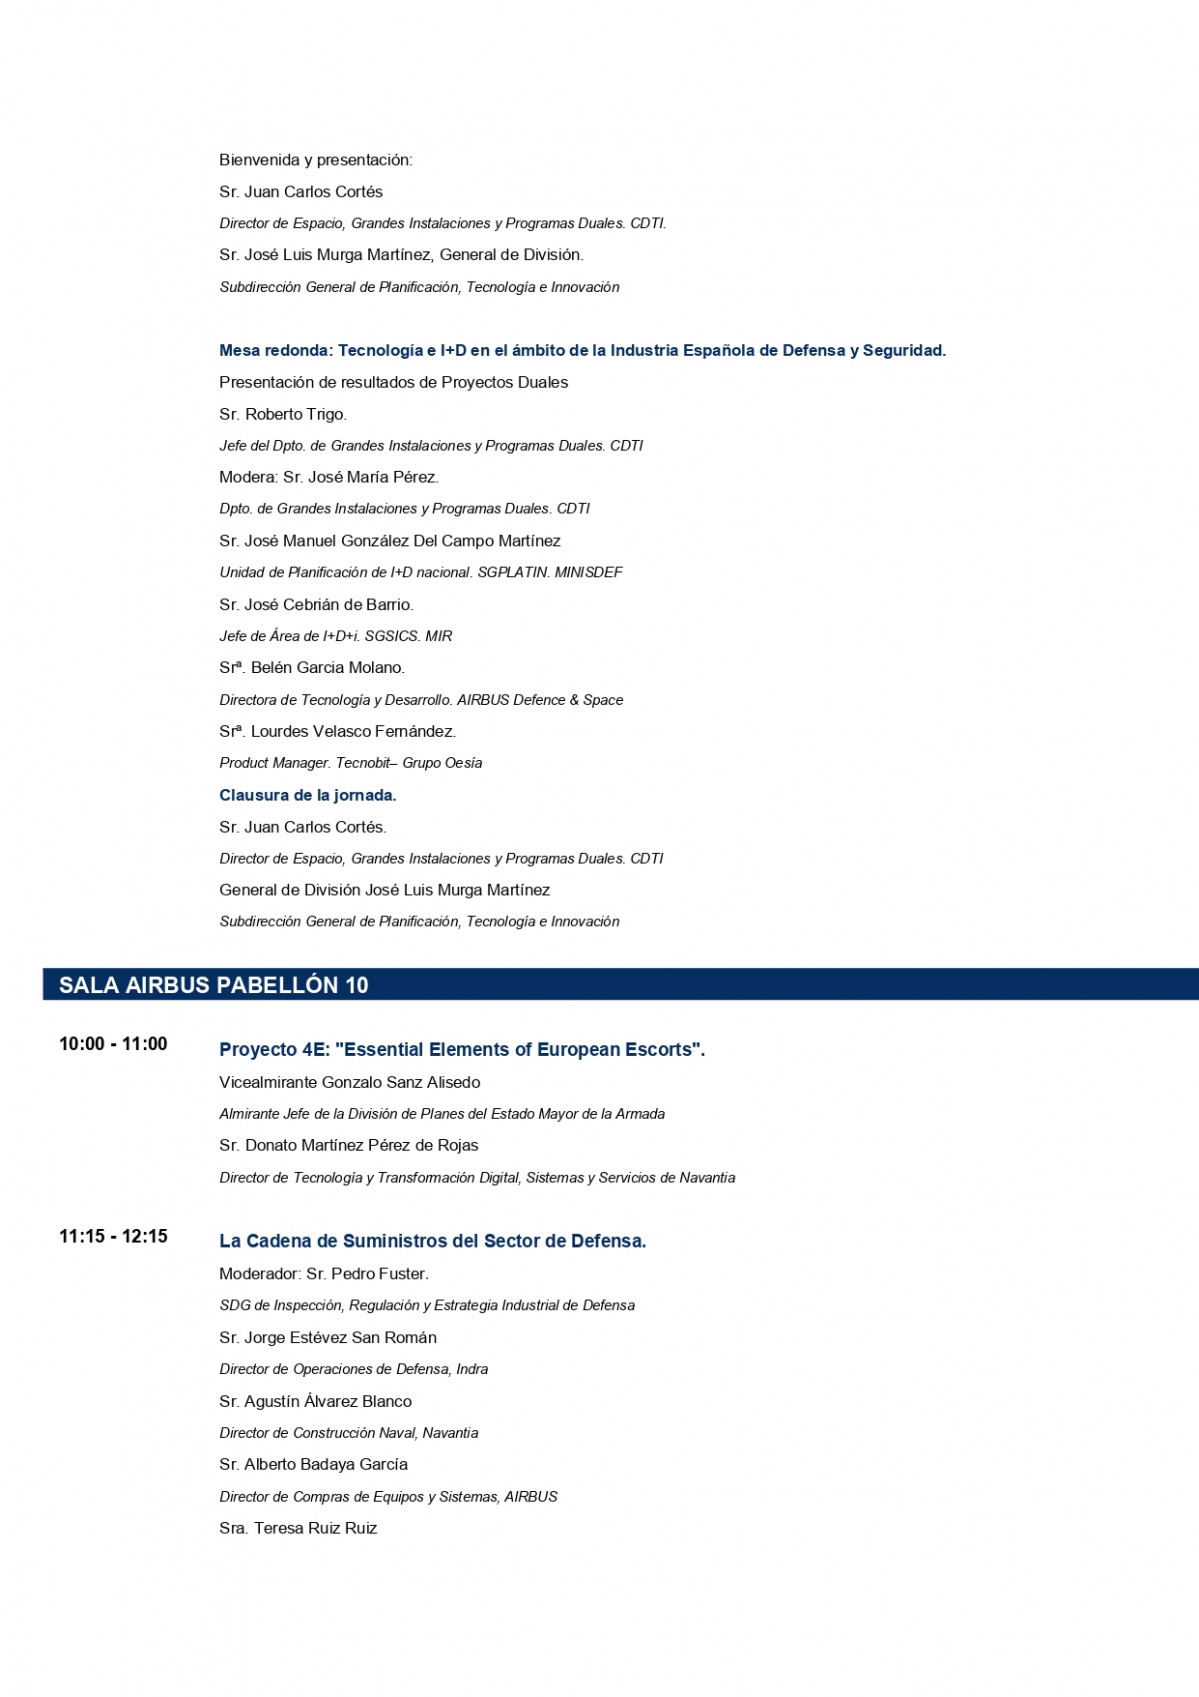 Programa de conferencias (1) page 0010